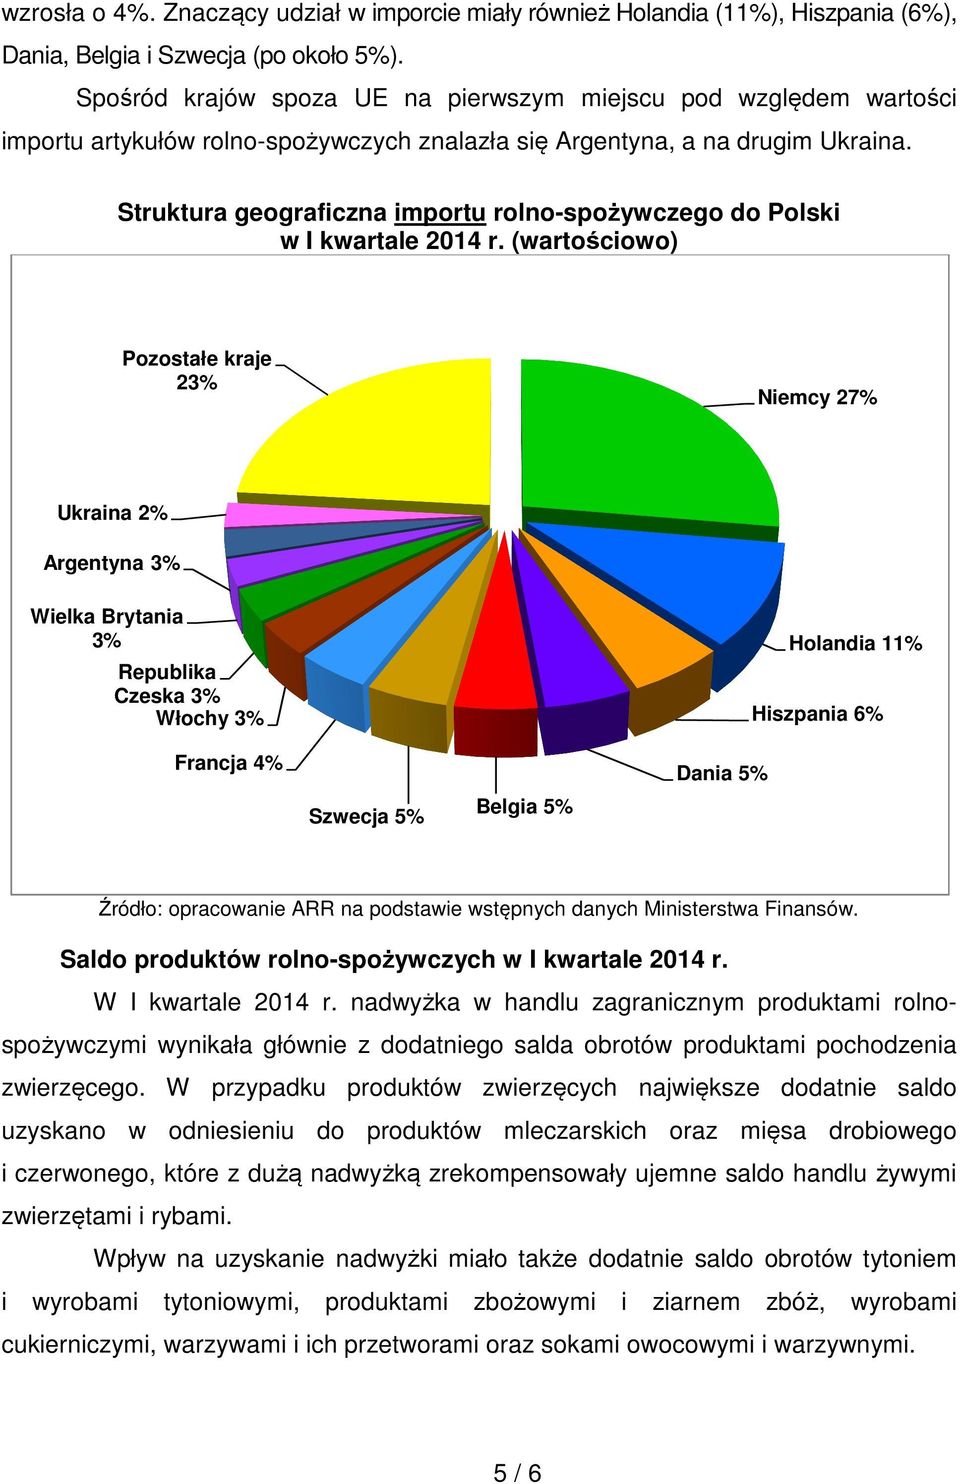 Struktura geograficzna importu rolno-spożywczego do Polski Pozostałe kraje 23% Niemcy 27% Ukraina 2% Argentyna 3% Wielka Brytania 3% Republika Czeska 3% Włochy 3% Francja 4% Szwecja 5% Belgia 5%